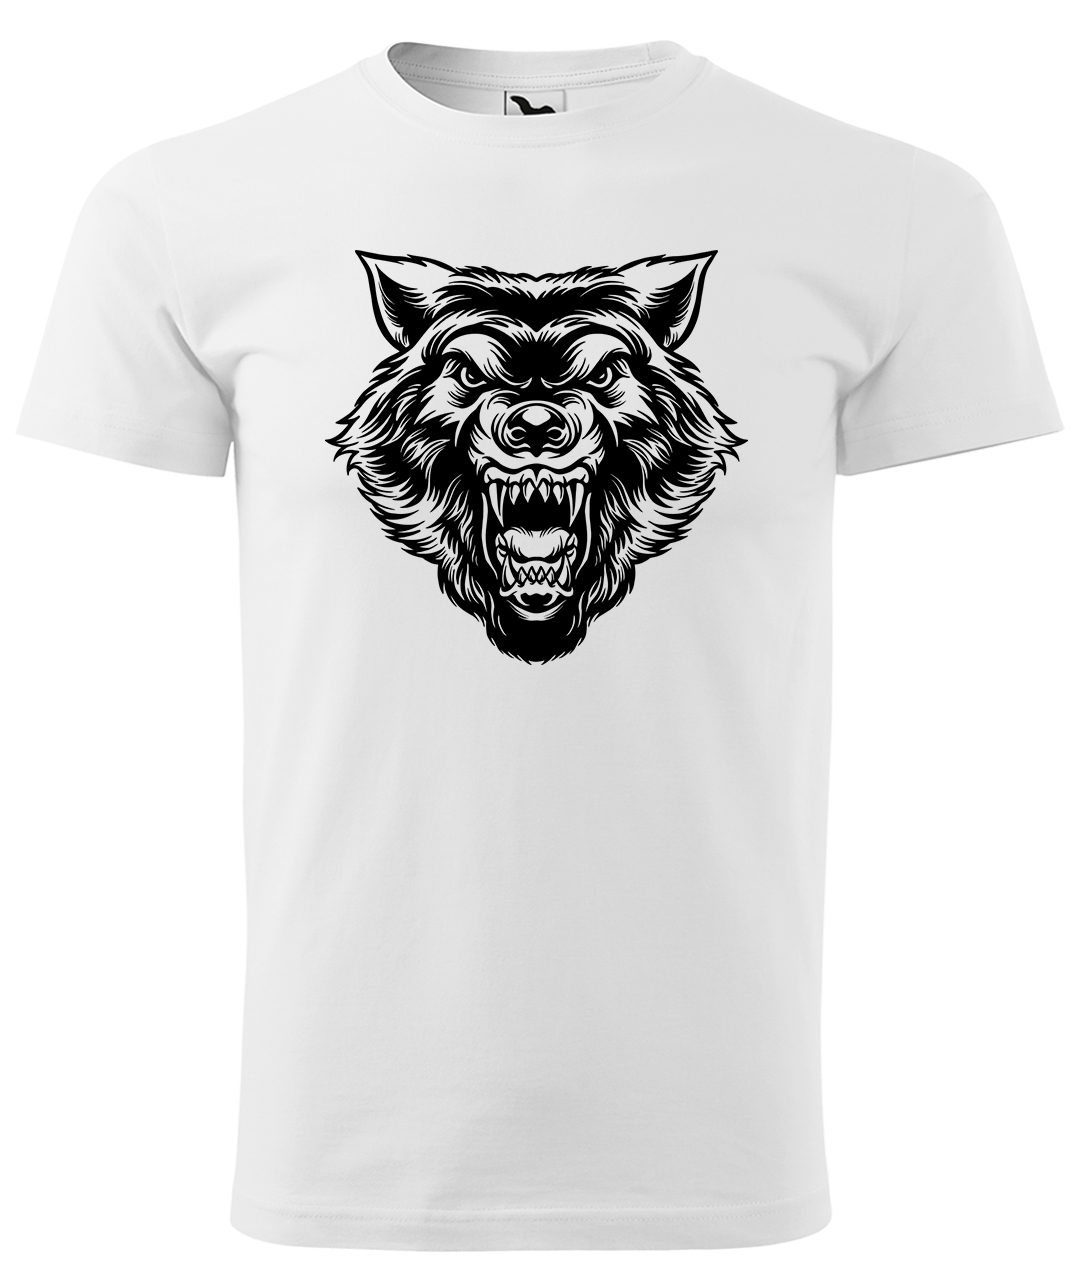 Dětské tričko s vlkem - Rozzuřený vlk Velikost: 10 let / 146 cm, Barva: Bílá (00), Délka rukávu: Krátký rukáv